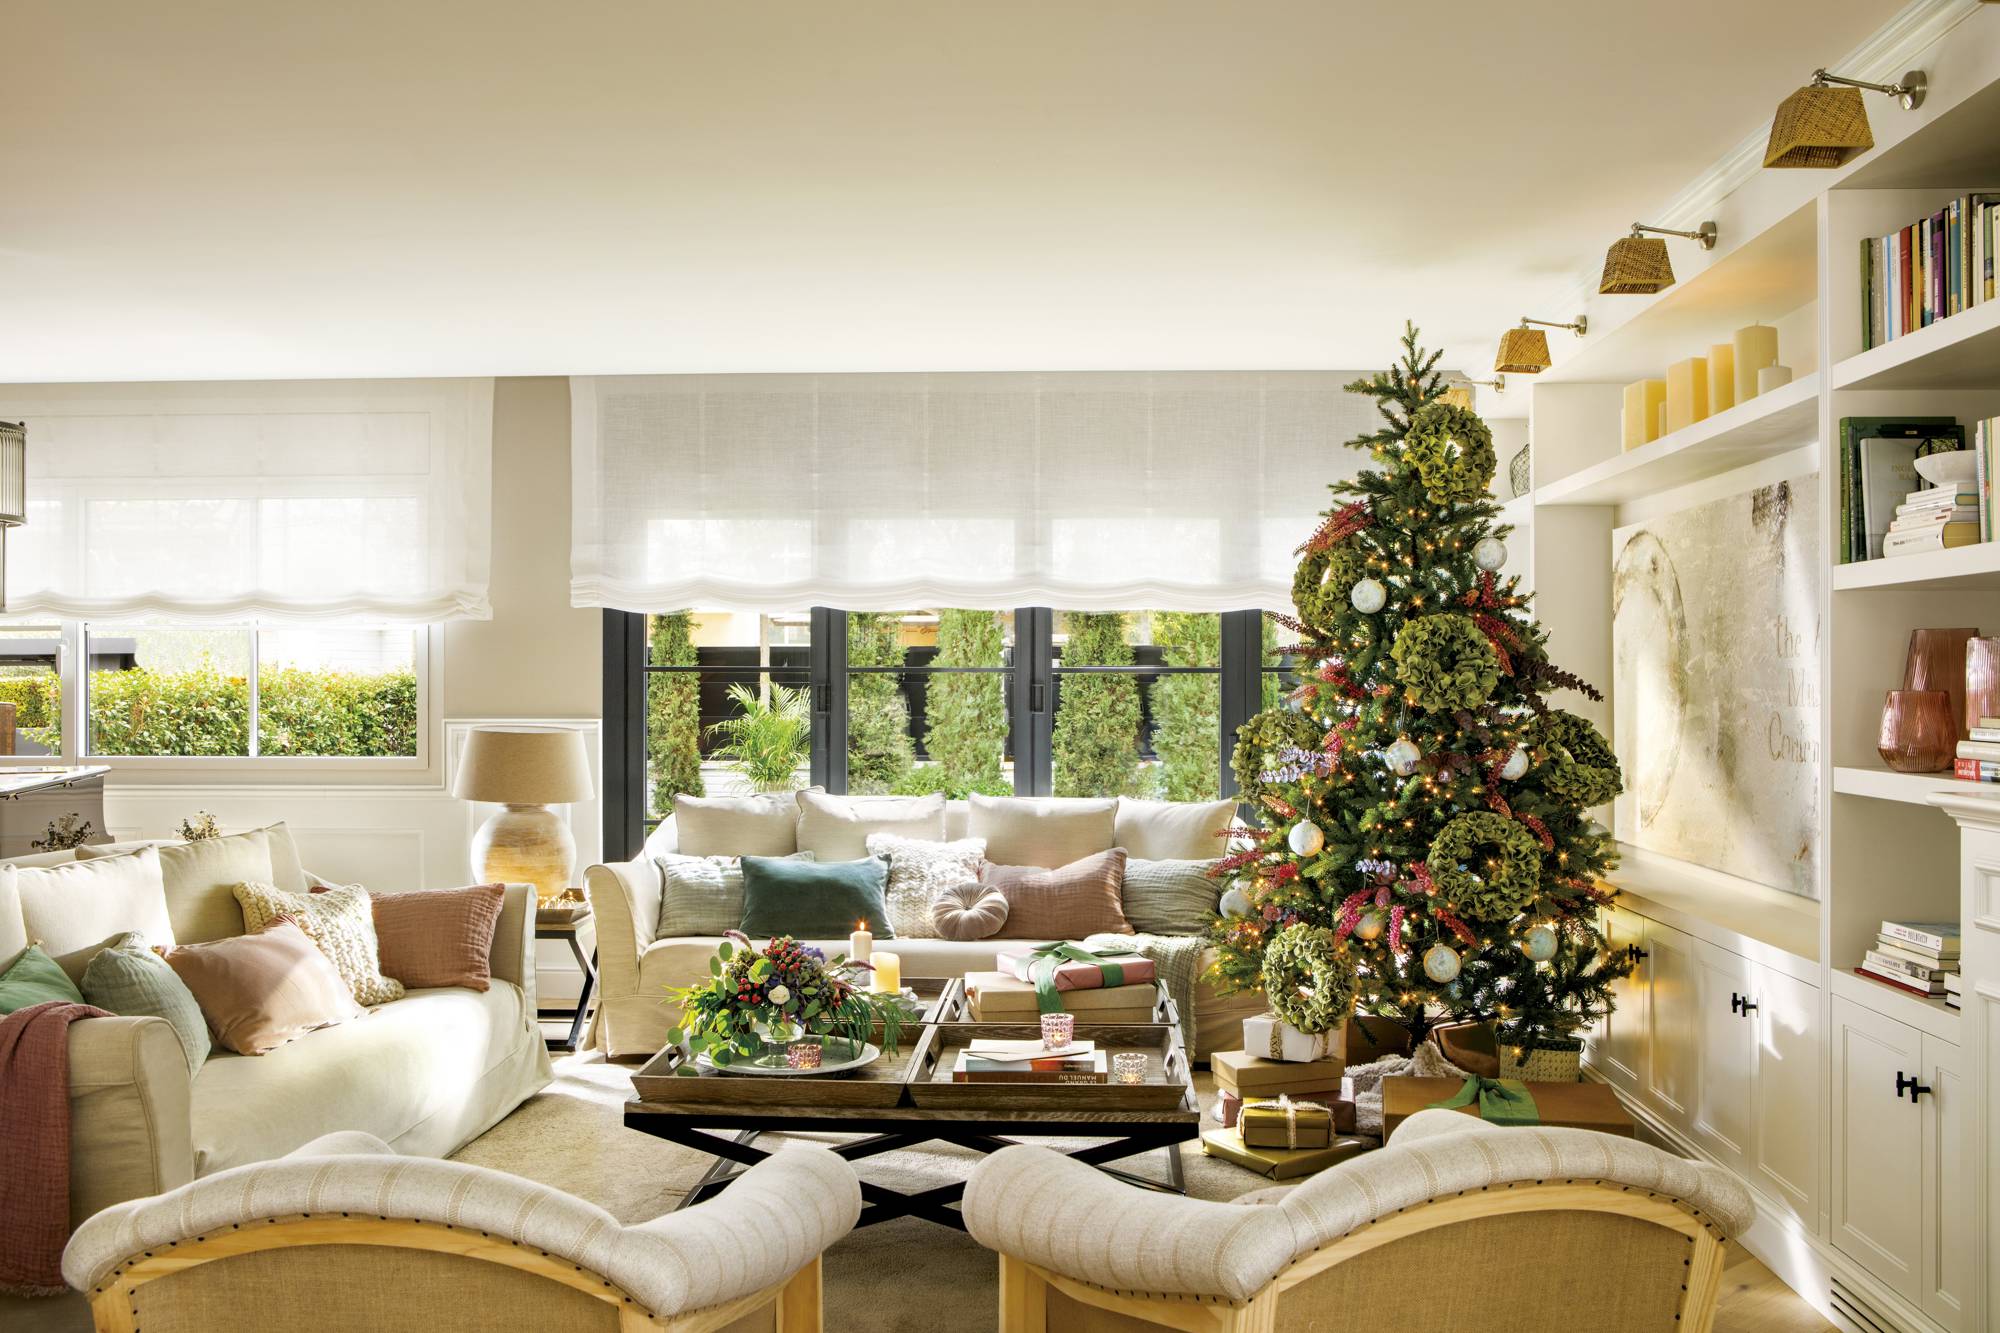 Salón clásico en tonos claros con árbol de Navidad